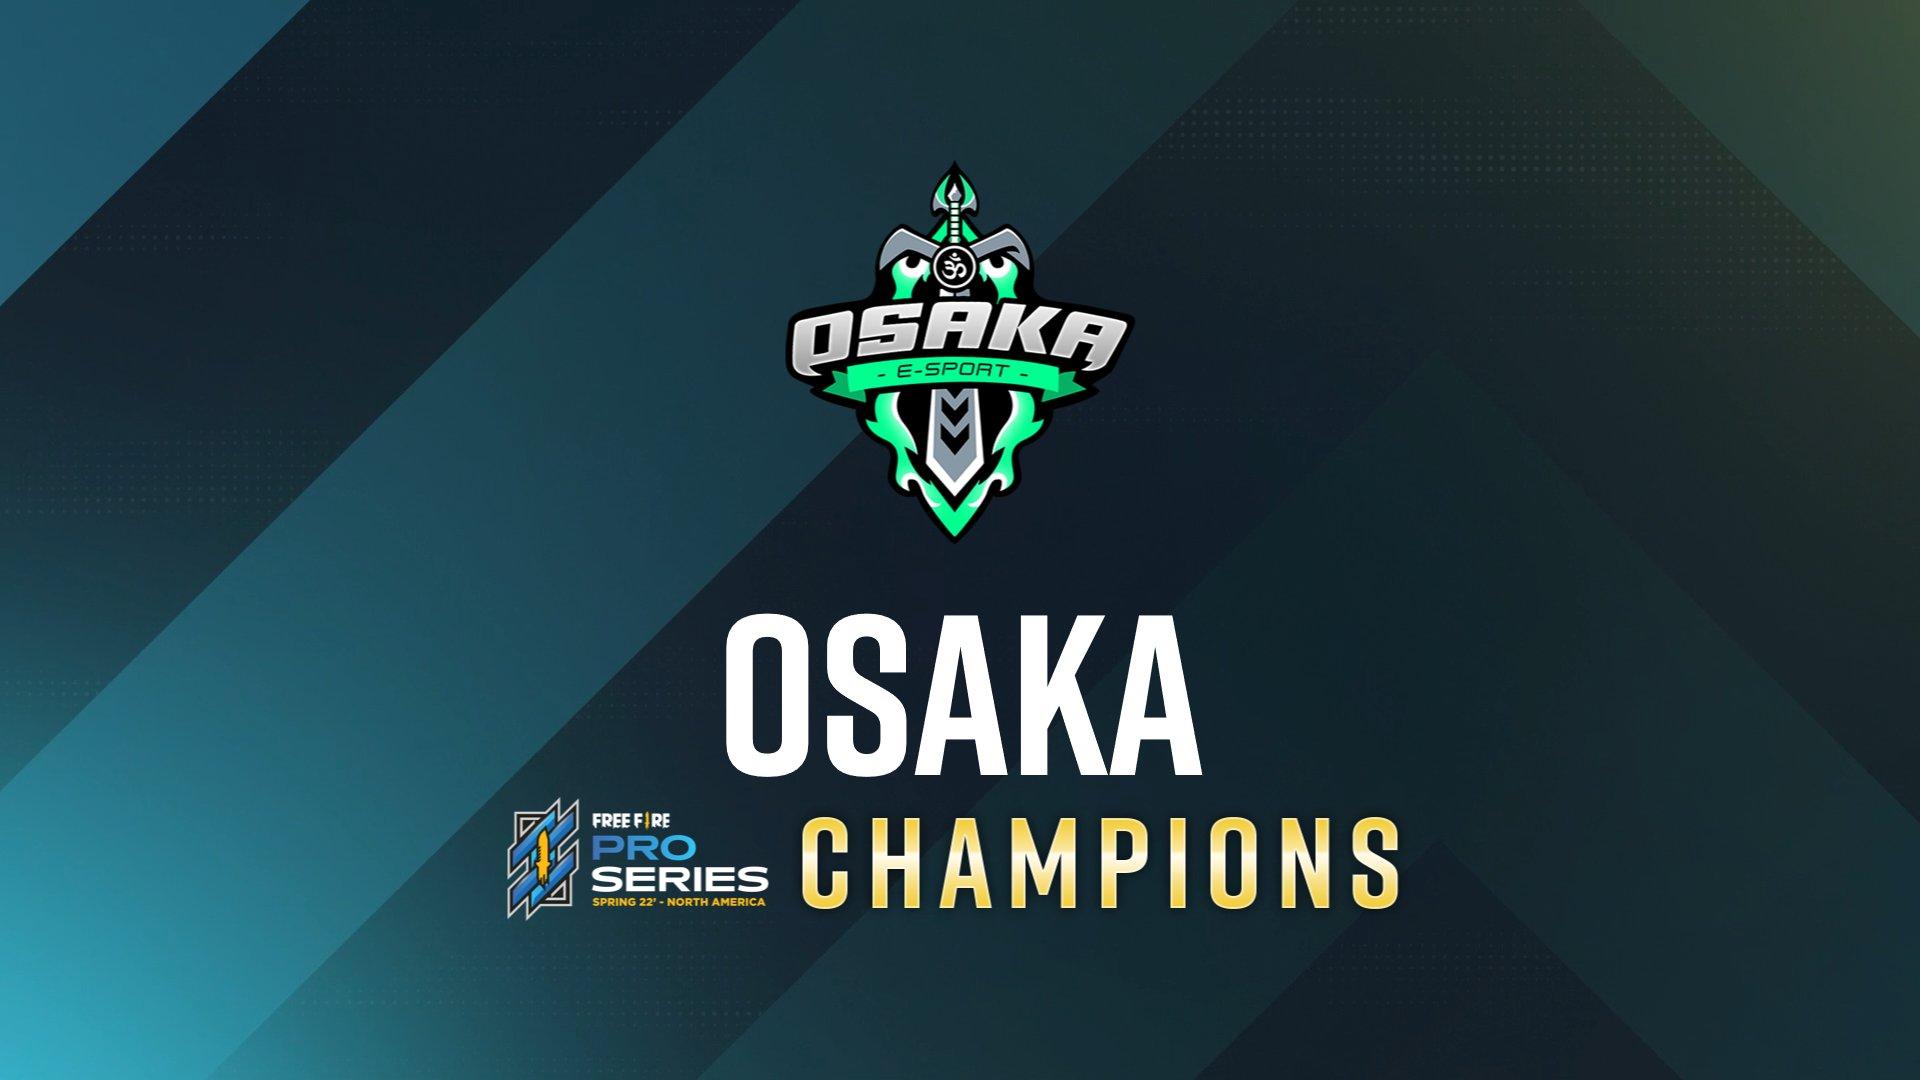 Osaka gana la Free Fire Pro Series en EE. UU. y se clasifica para el mundial